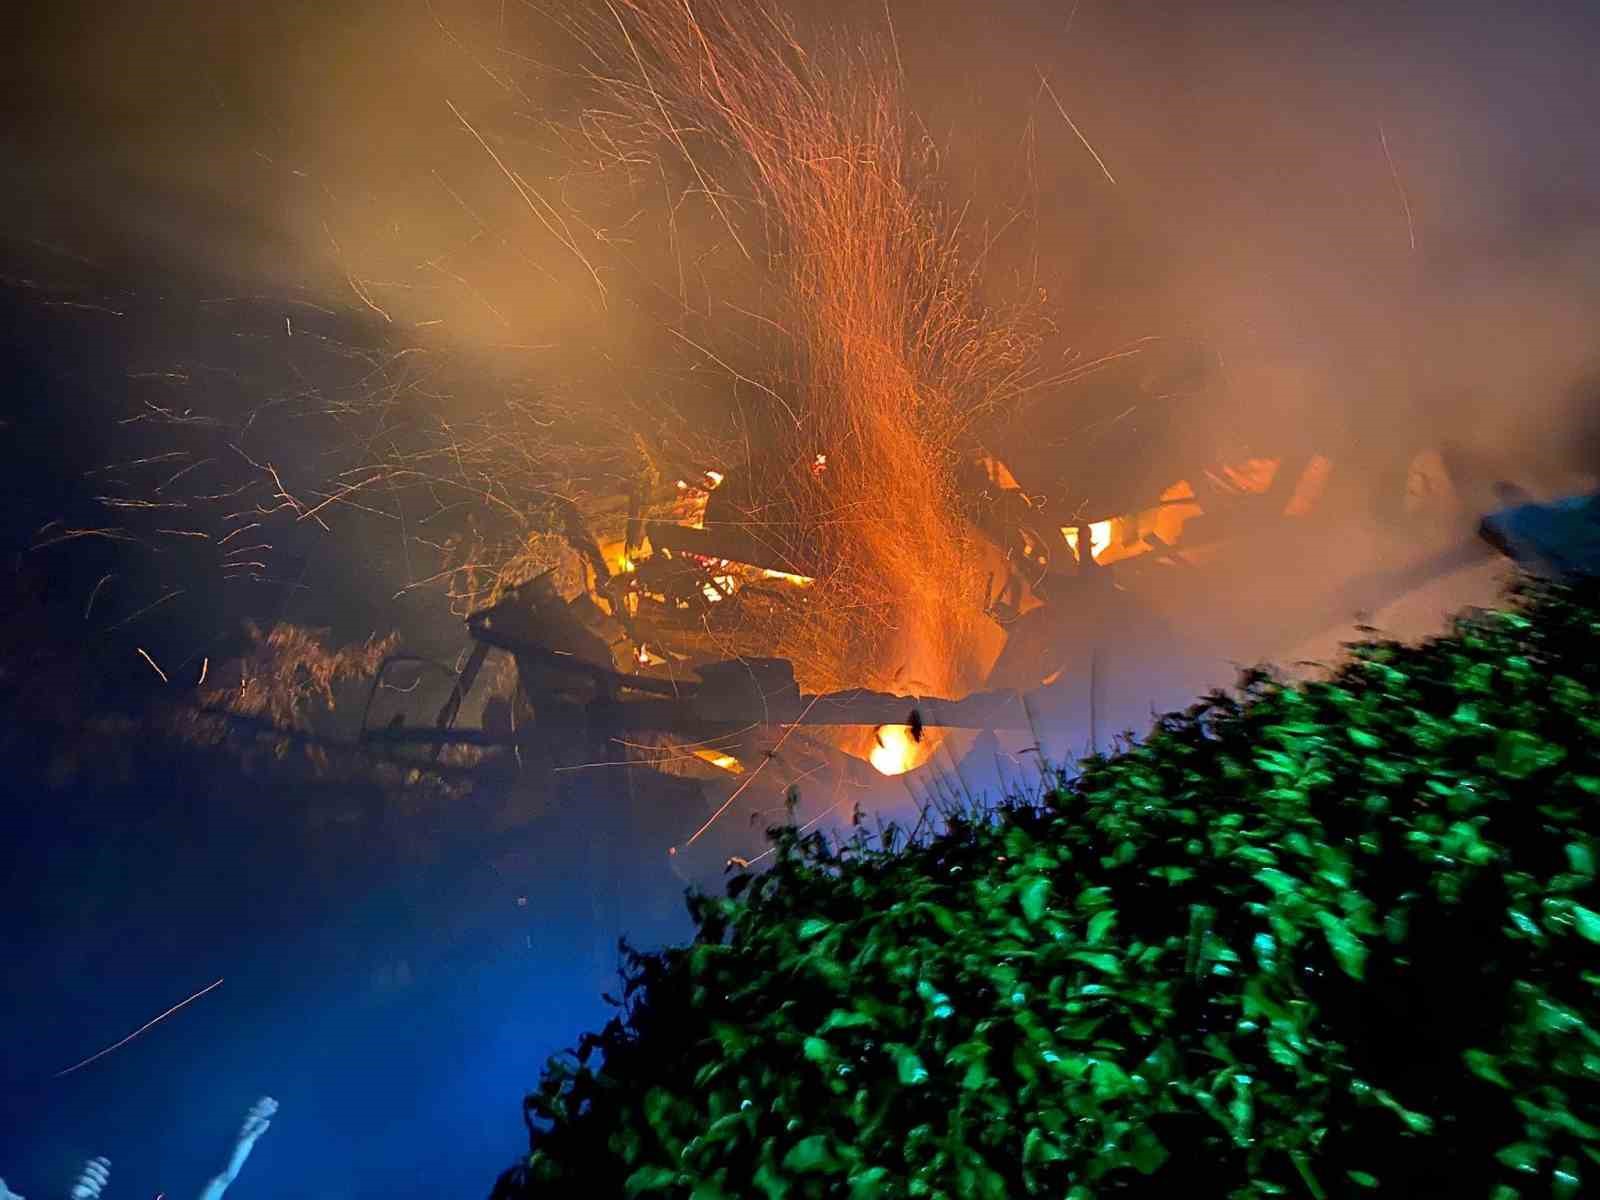 İki katlı evde yaşanan yangın panik ve korkuya neden oldu